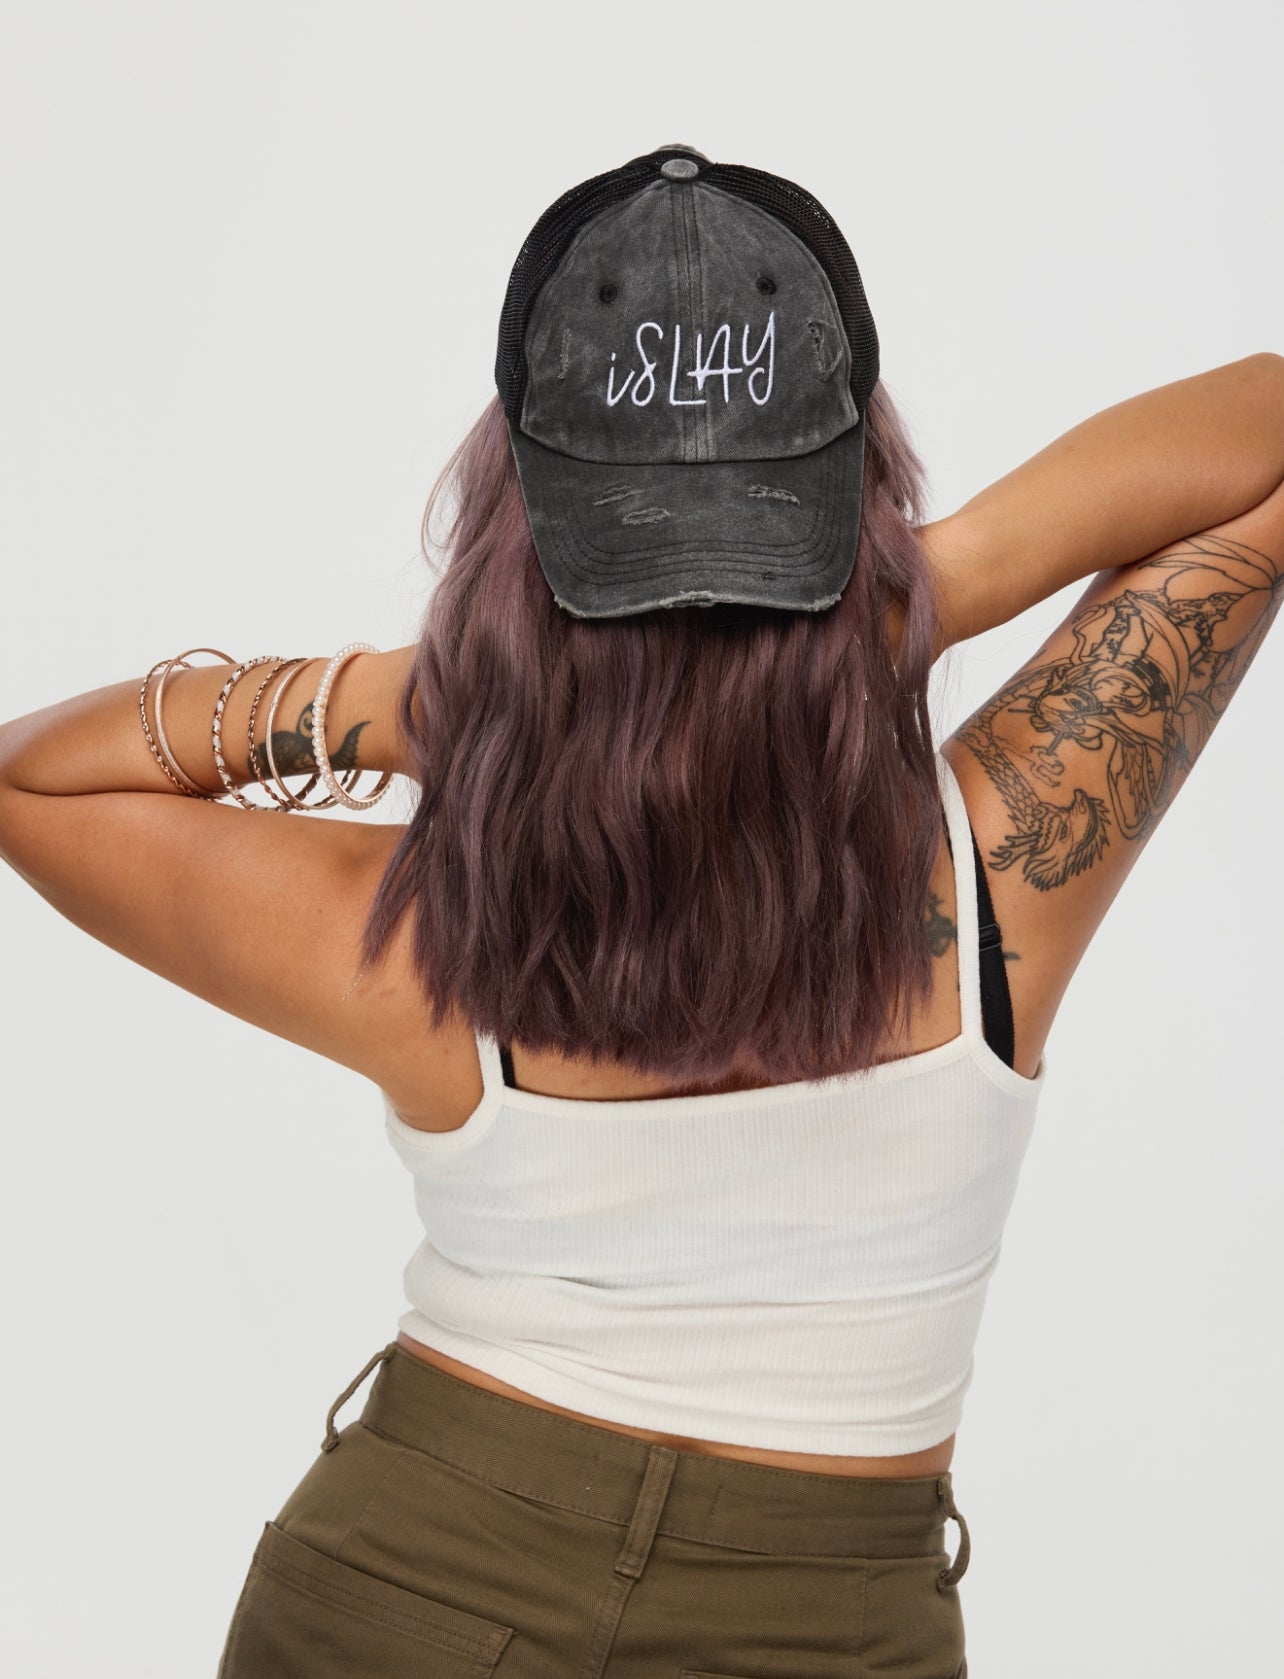 Maia @eyeswildstudio black islay hat